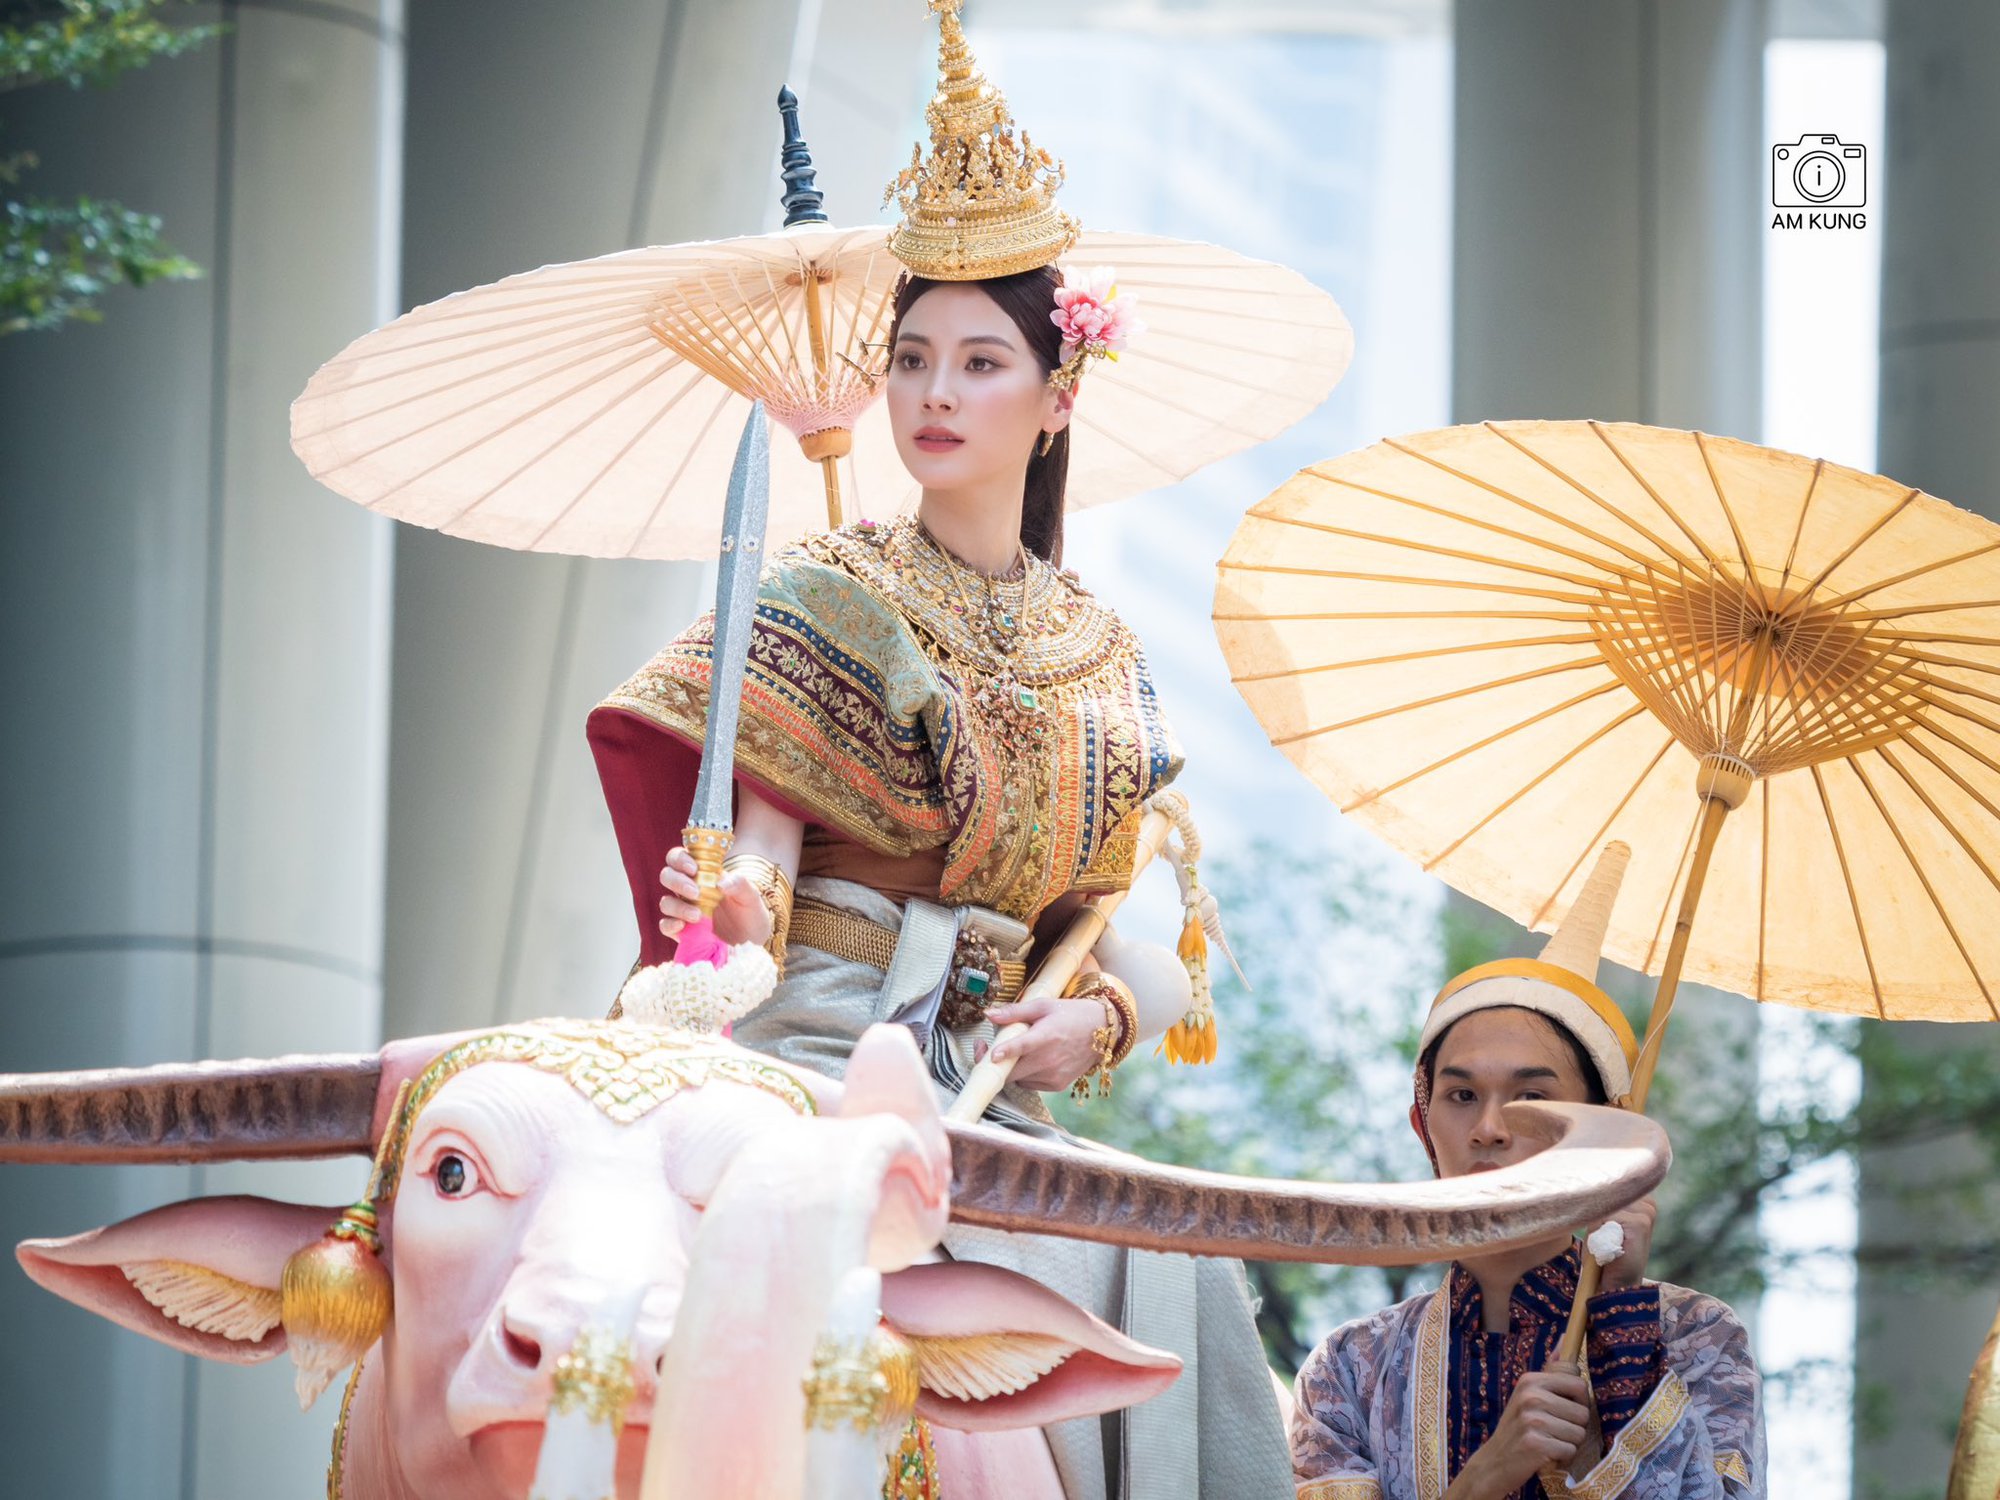 Nữ thần Songkran 2023 Baifern Pimchanok ngồi trên kiệu cao nhiệt tình chào người hâm mộ nhưng bị bắn nước “không trượt phát nào” - Ảnh 8.